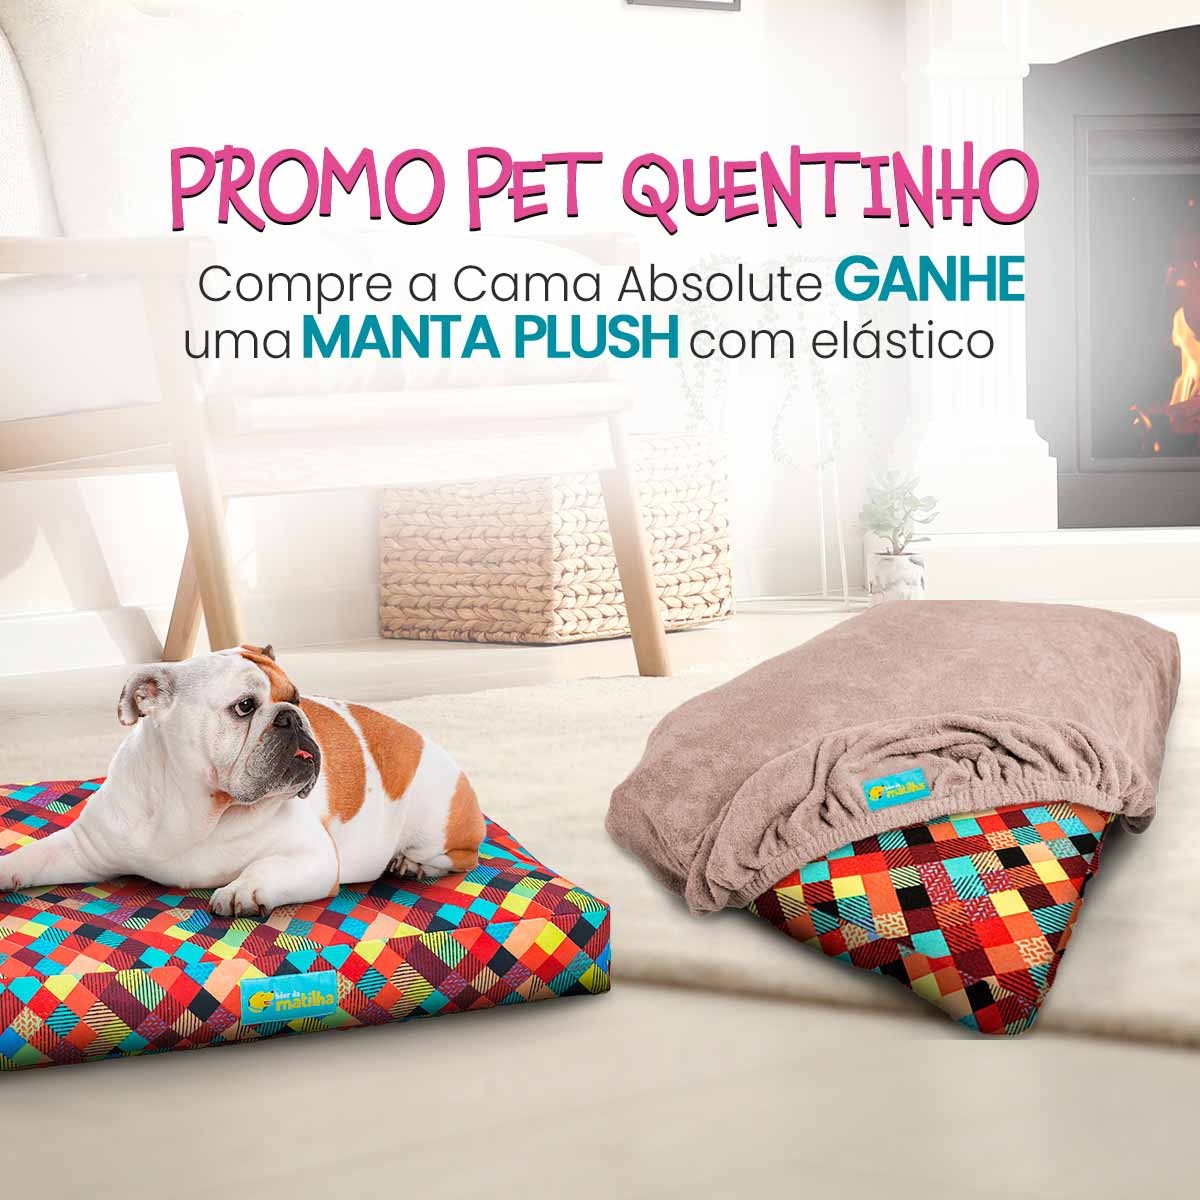 Promo Pet Quentinho - Compre a Cama Absolute e Ganhe a Manta Plush